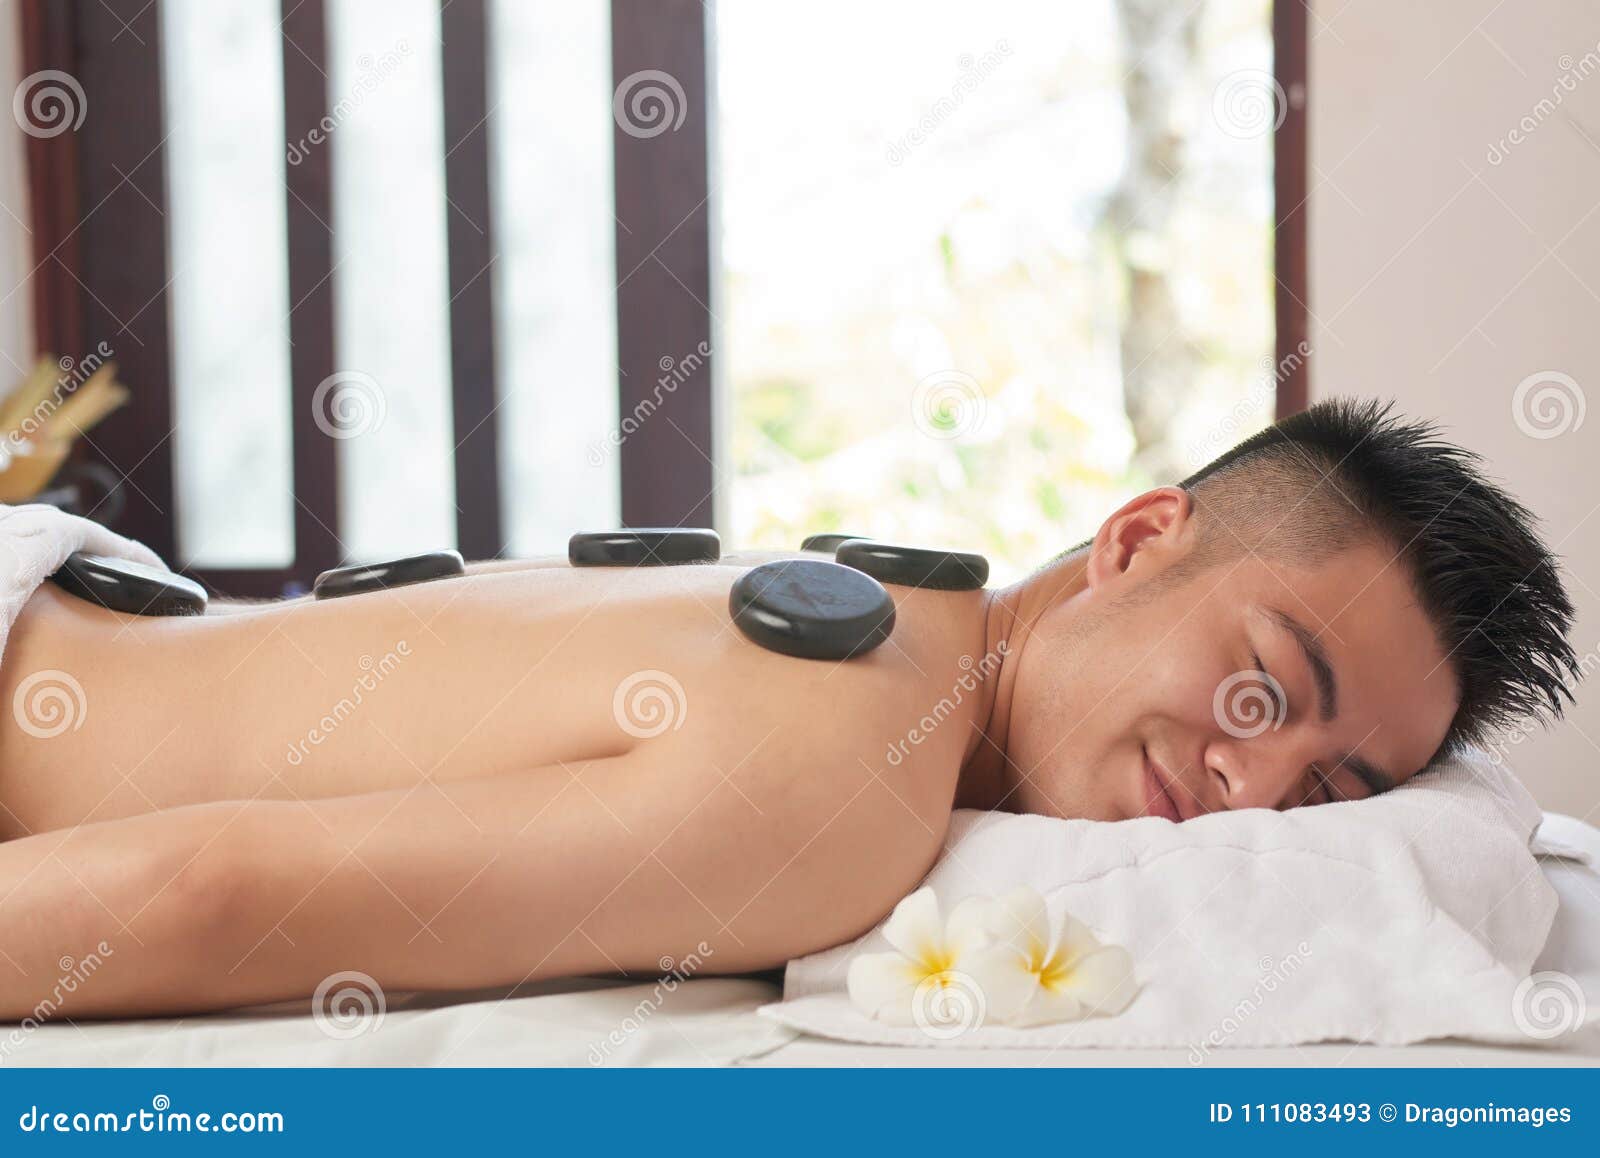 Азиатский человек на роскошном салоне курорта. Профилируйте взгляд усмехаясь азиатского человека лежа на таблице обработки с закрытыми глазами пока получающ горячий каменный массаж на роскошном салоне курорта